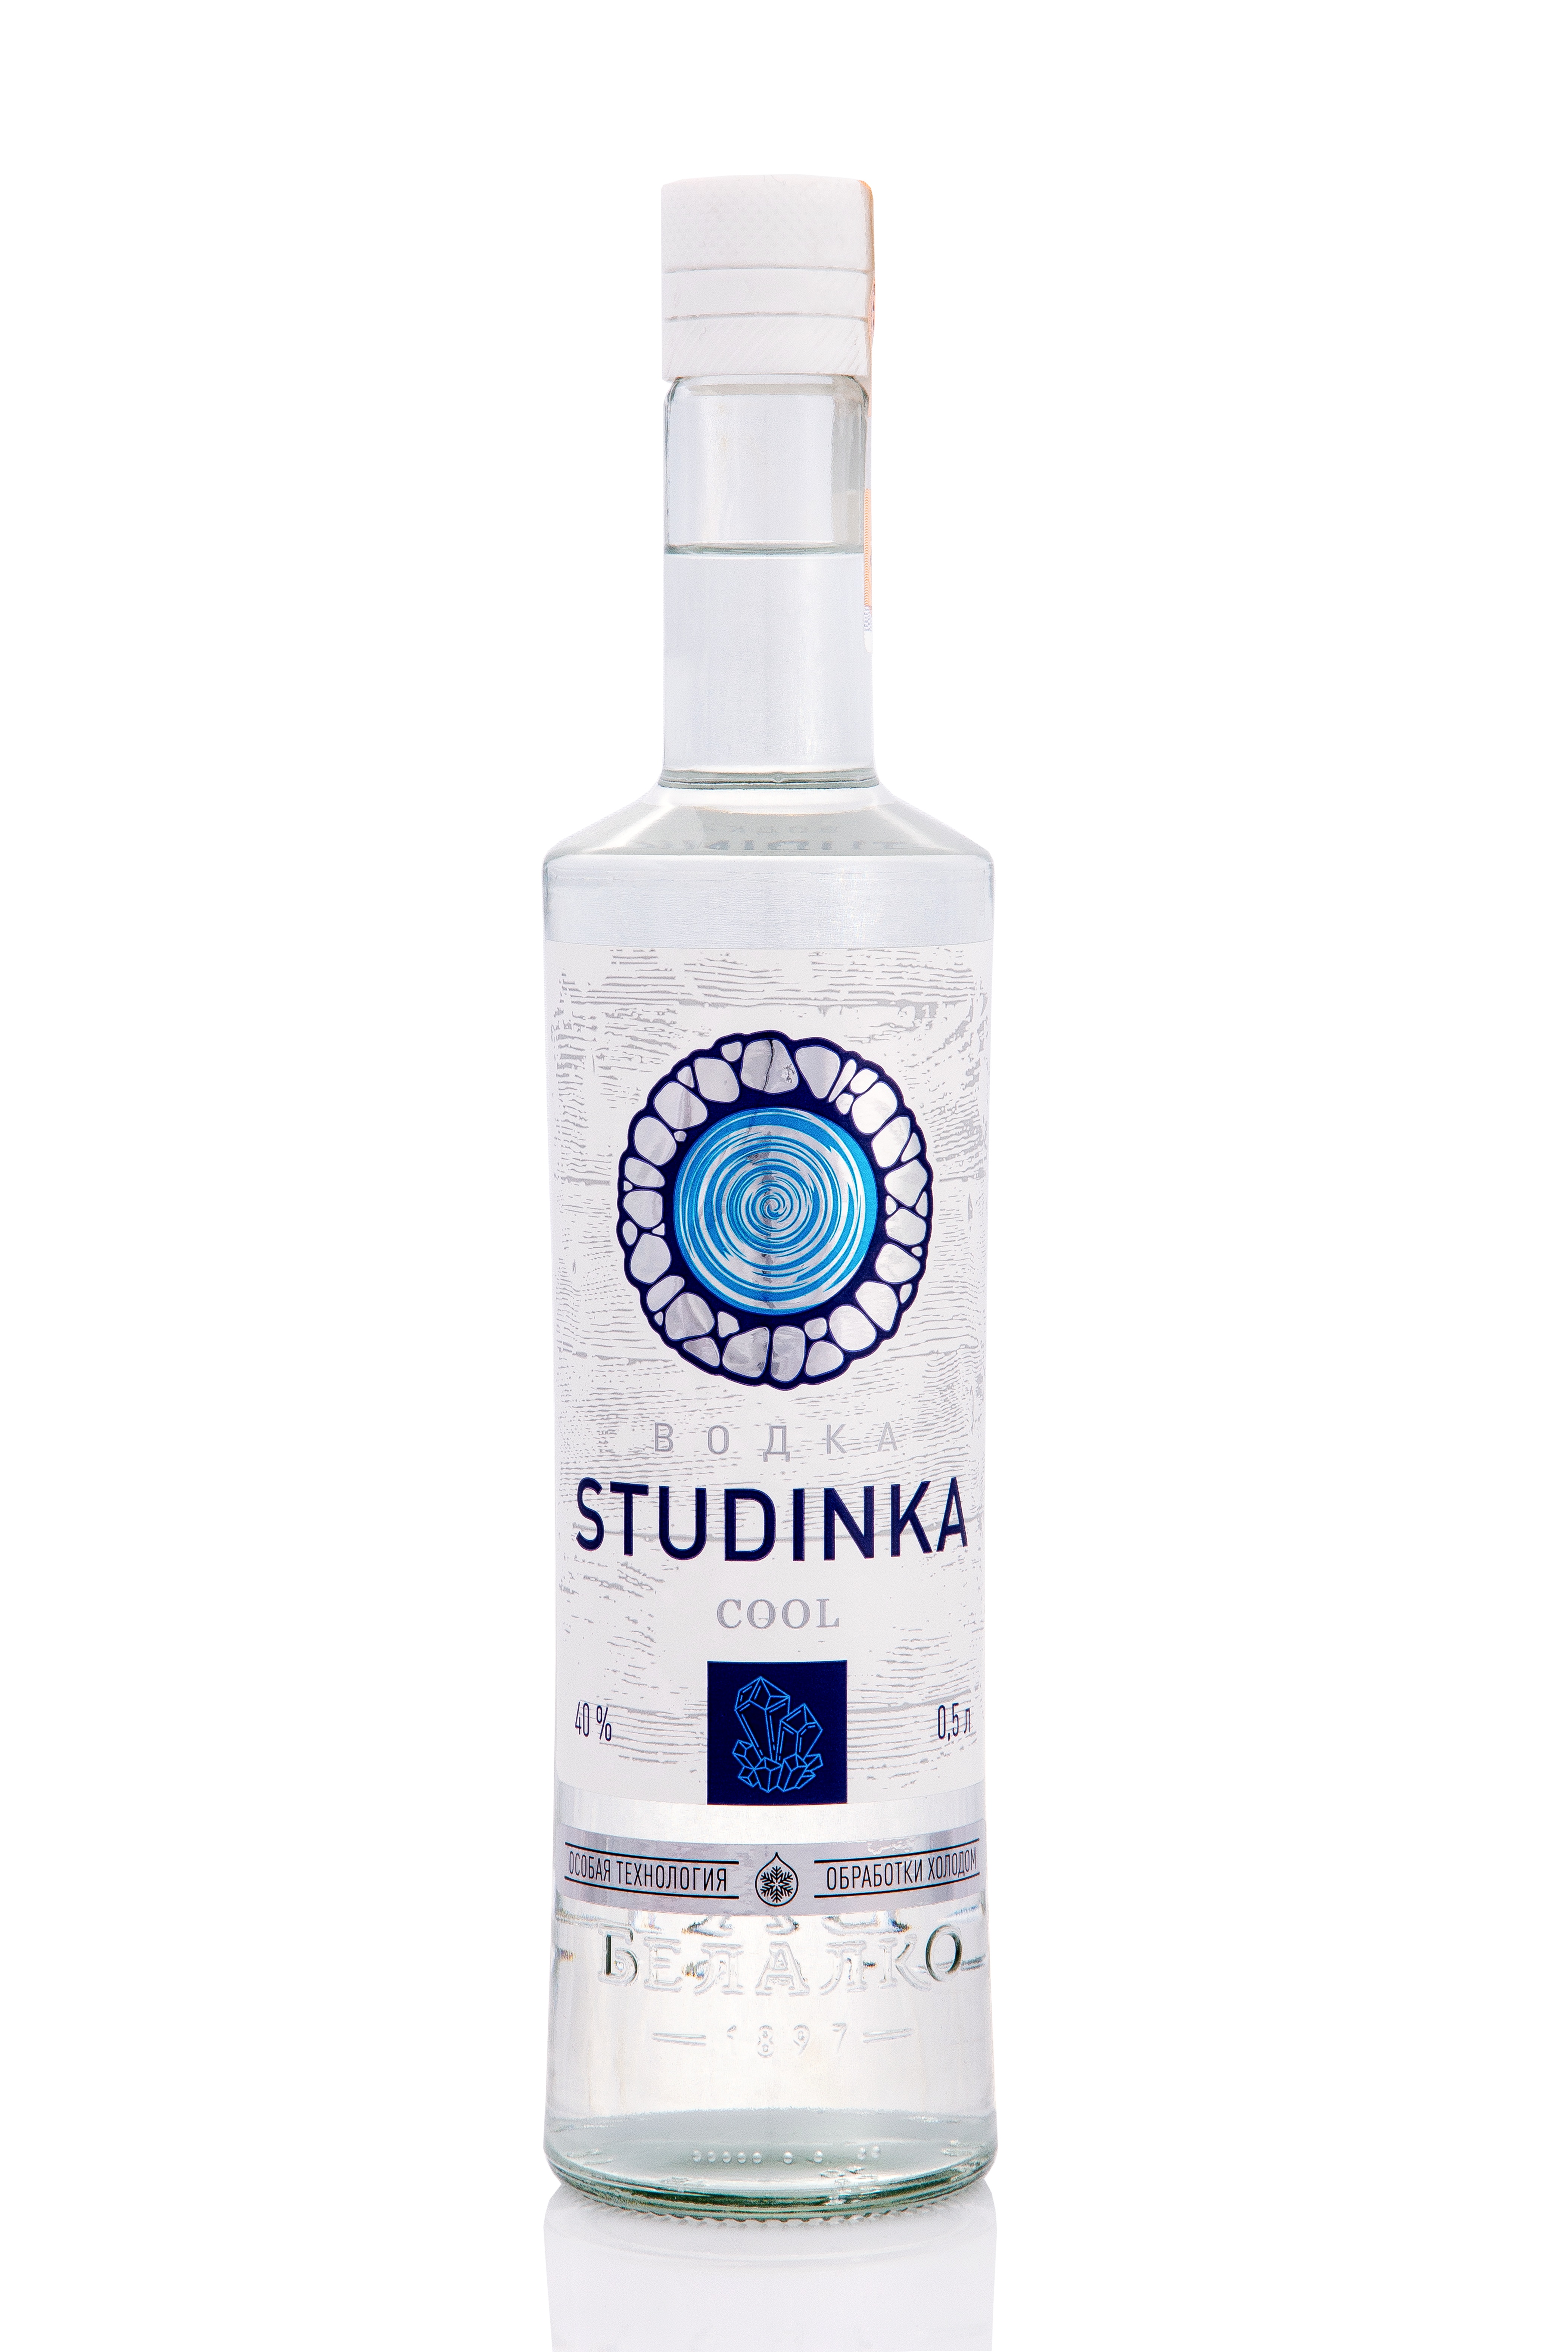 Vodka "Studinka Cооl"